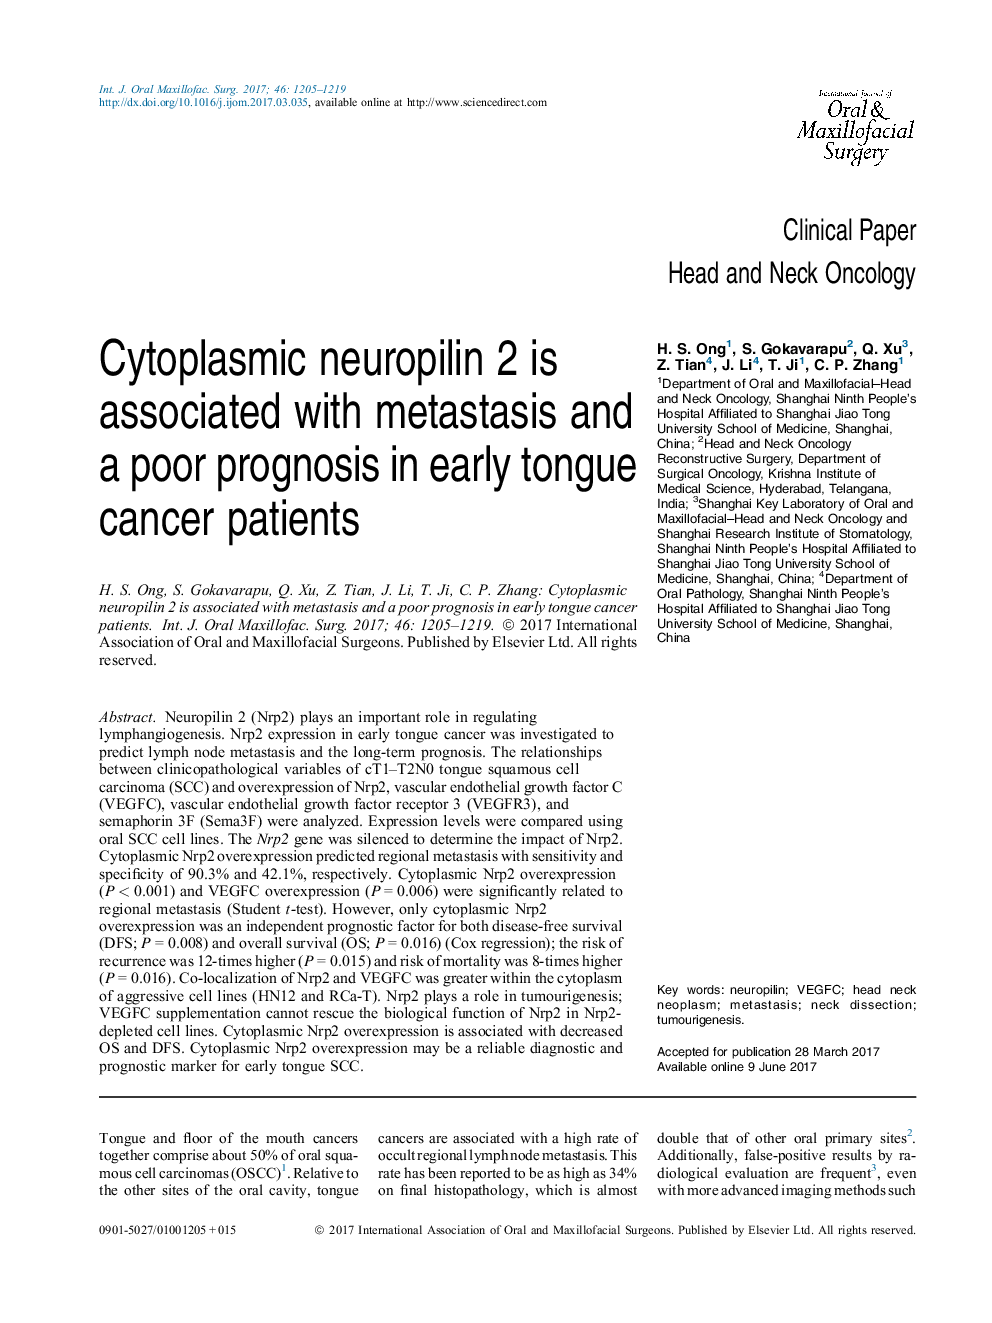 نوروپیلین 2 سیتوپلاسمی همراه با متاستاز و پیش آگهی ضعیف در بیماران سرطانی مبتلا به سرطان 